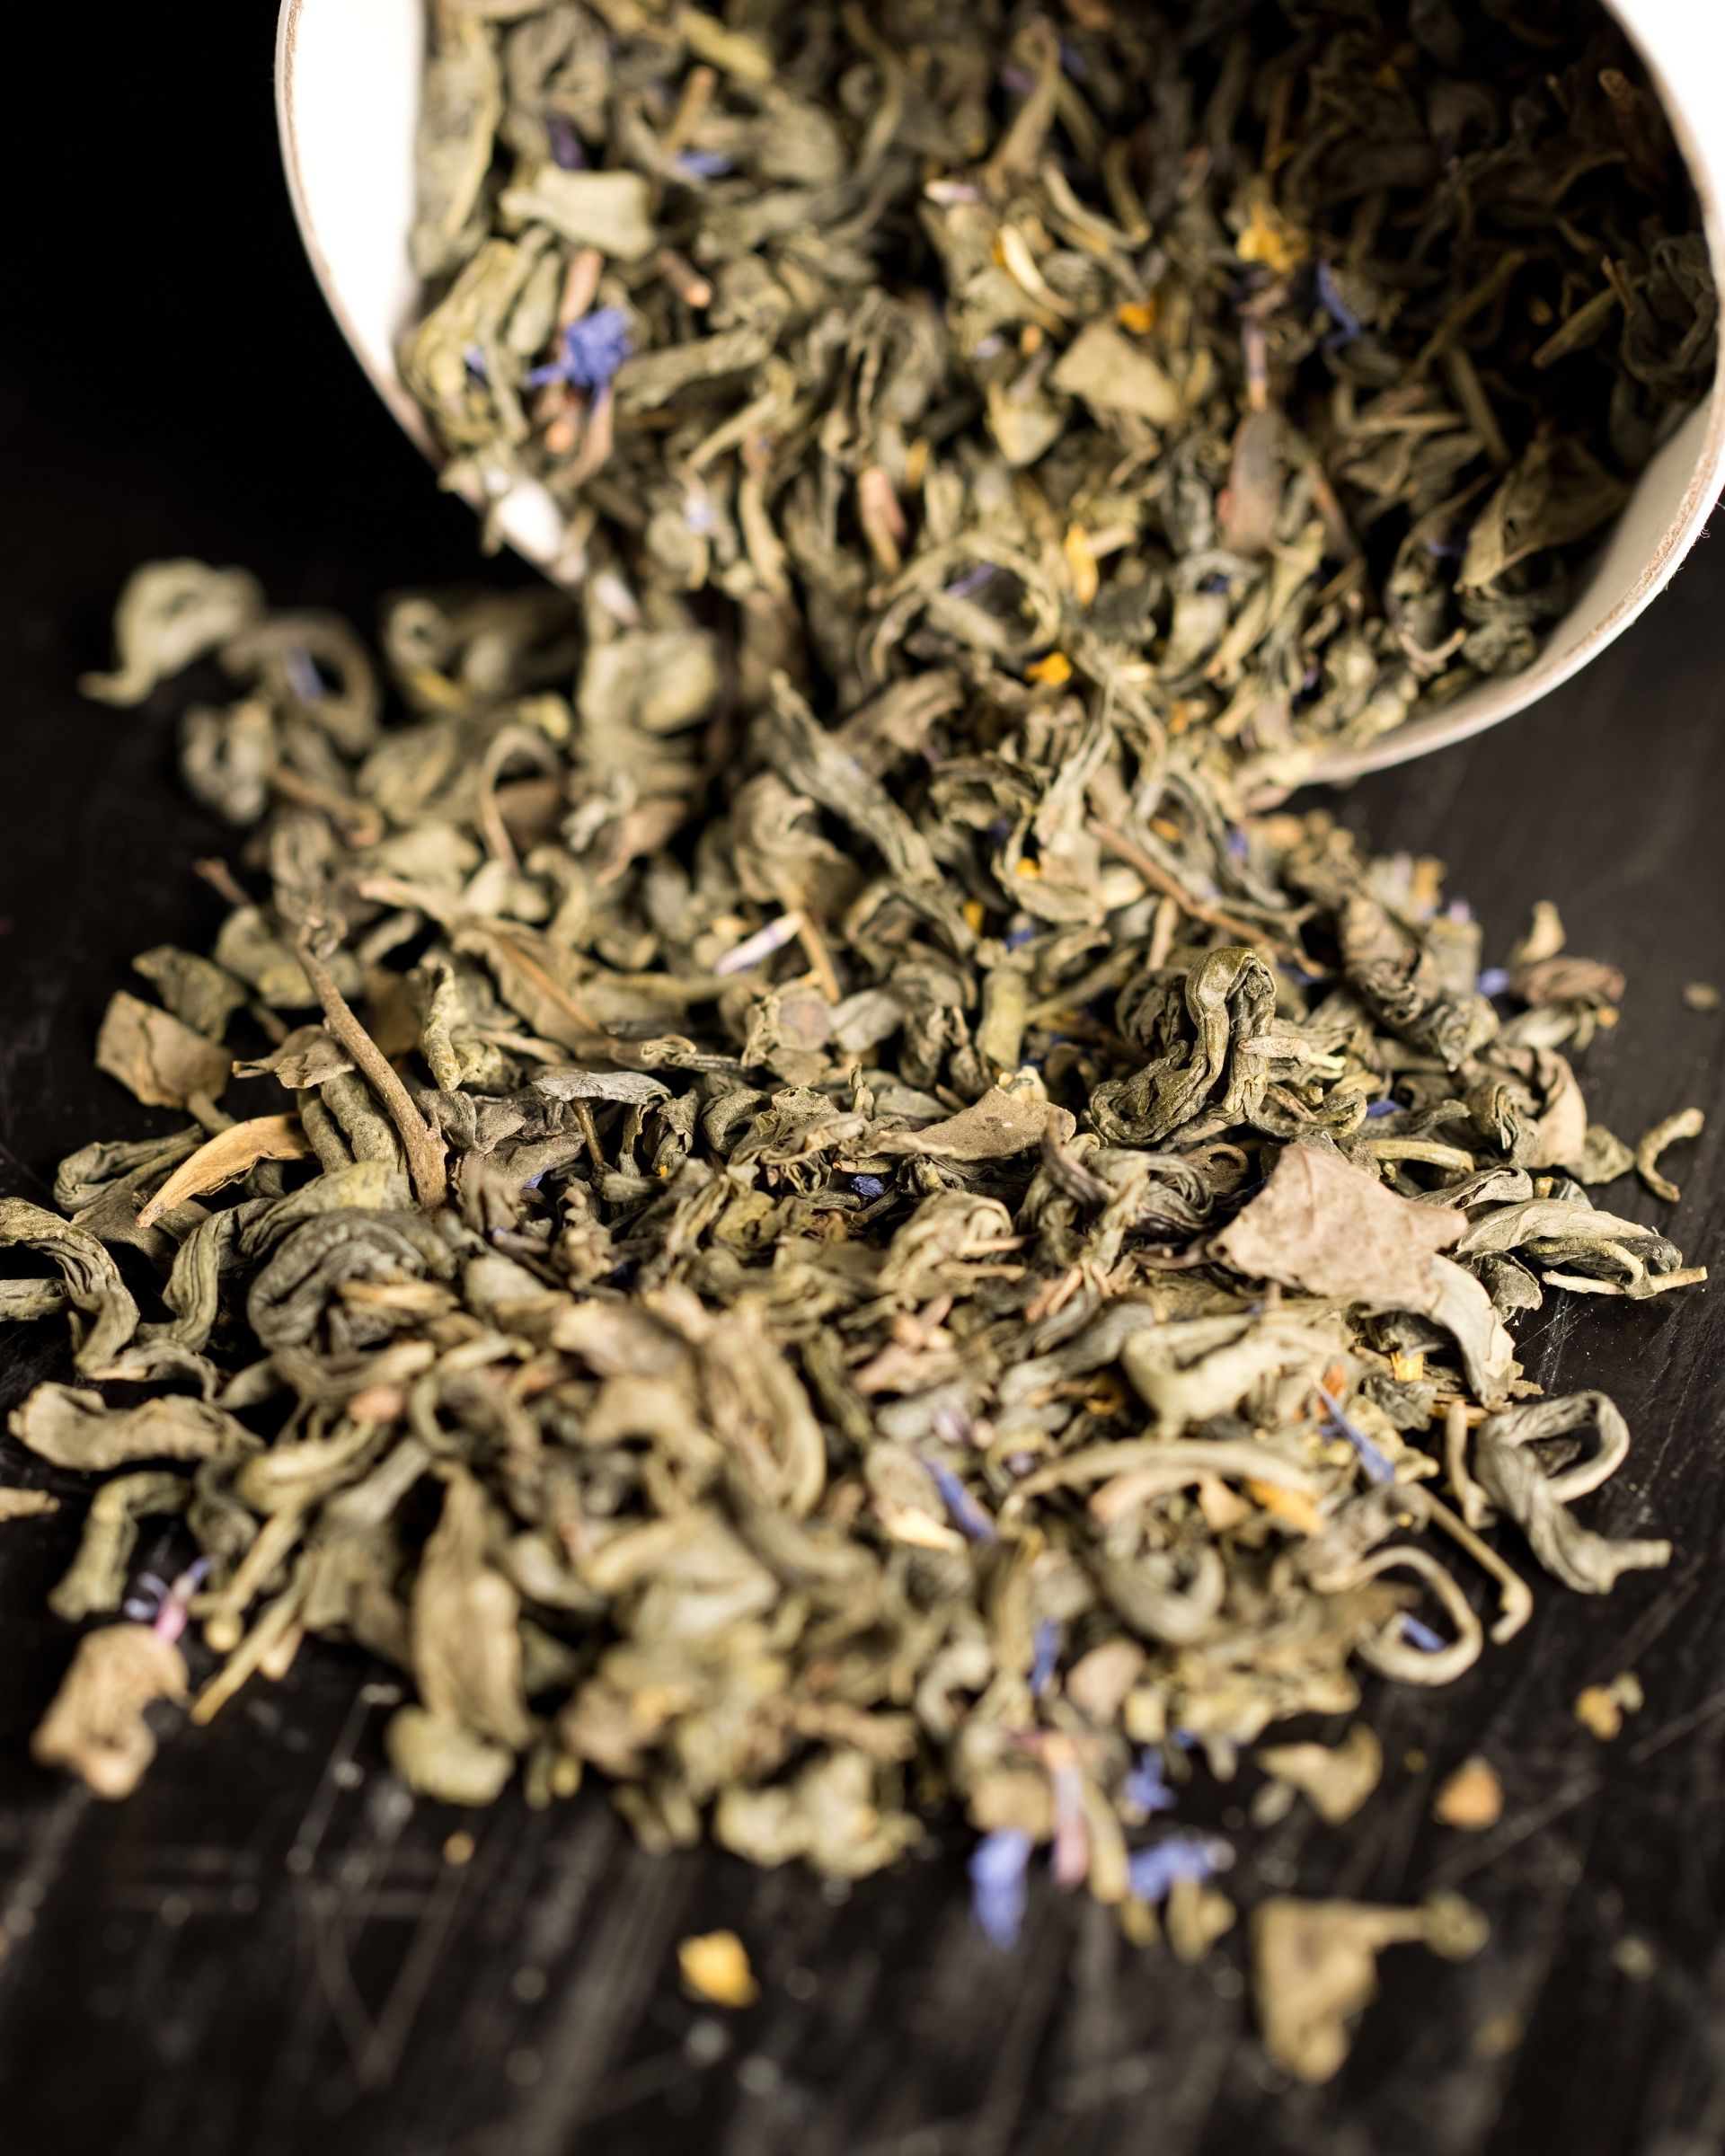 Herbata zielona z płatkami bławatka i nagietka Loft Kulinarny